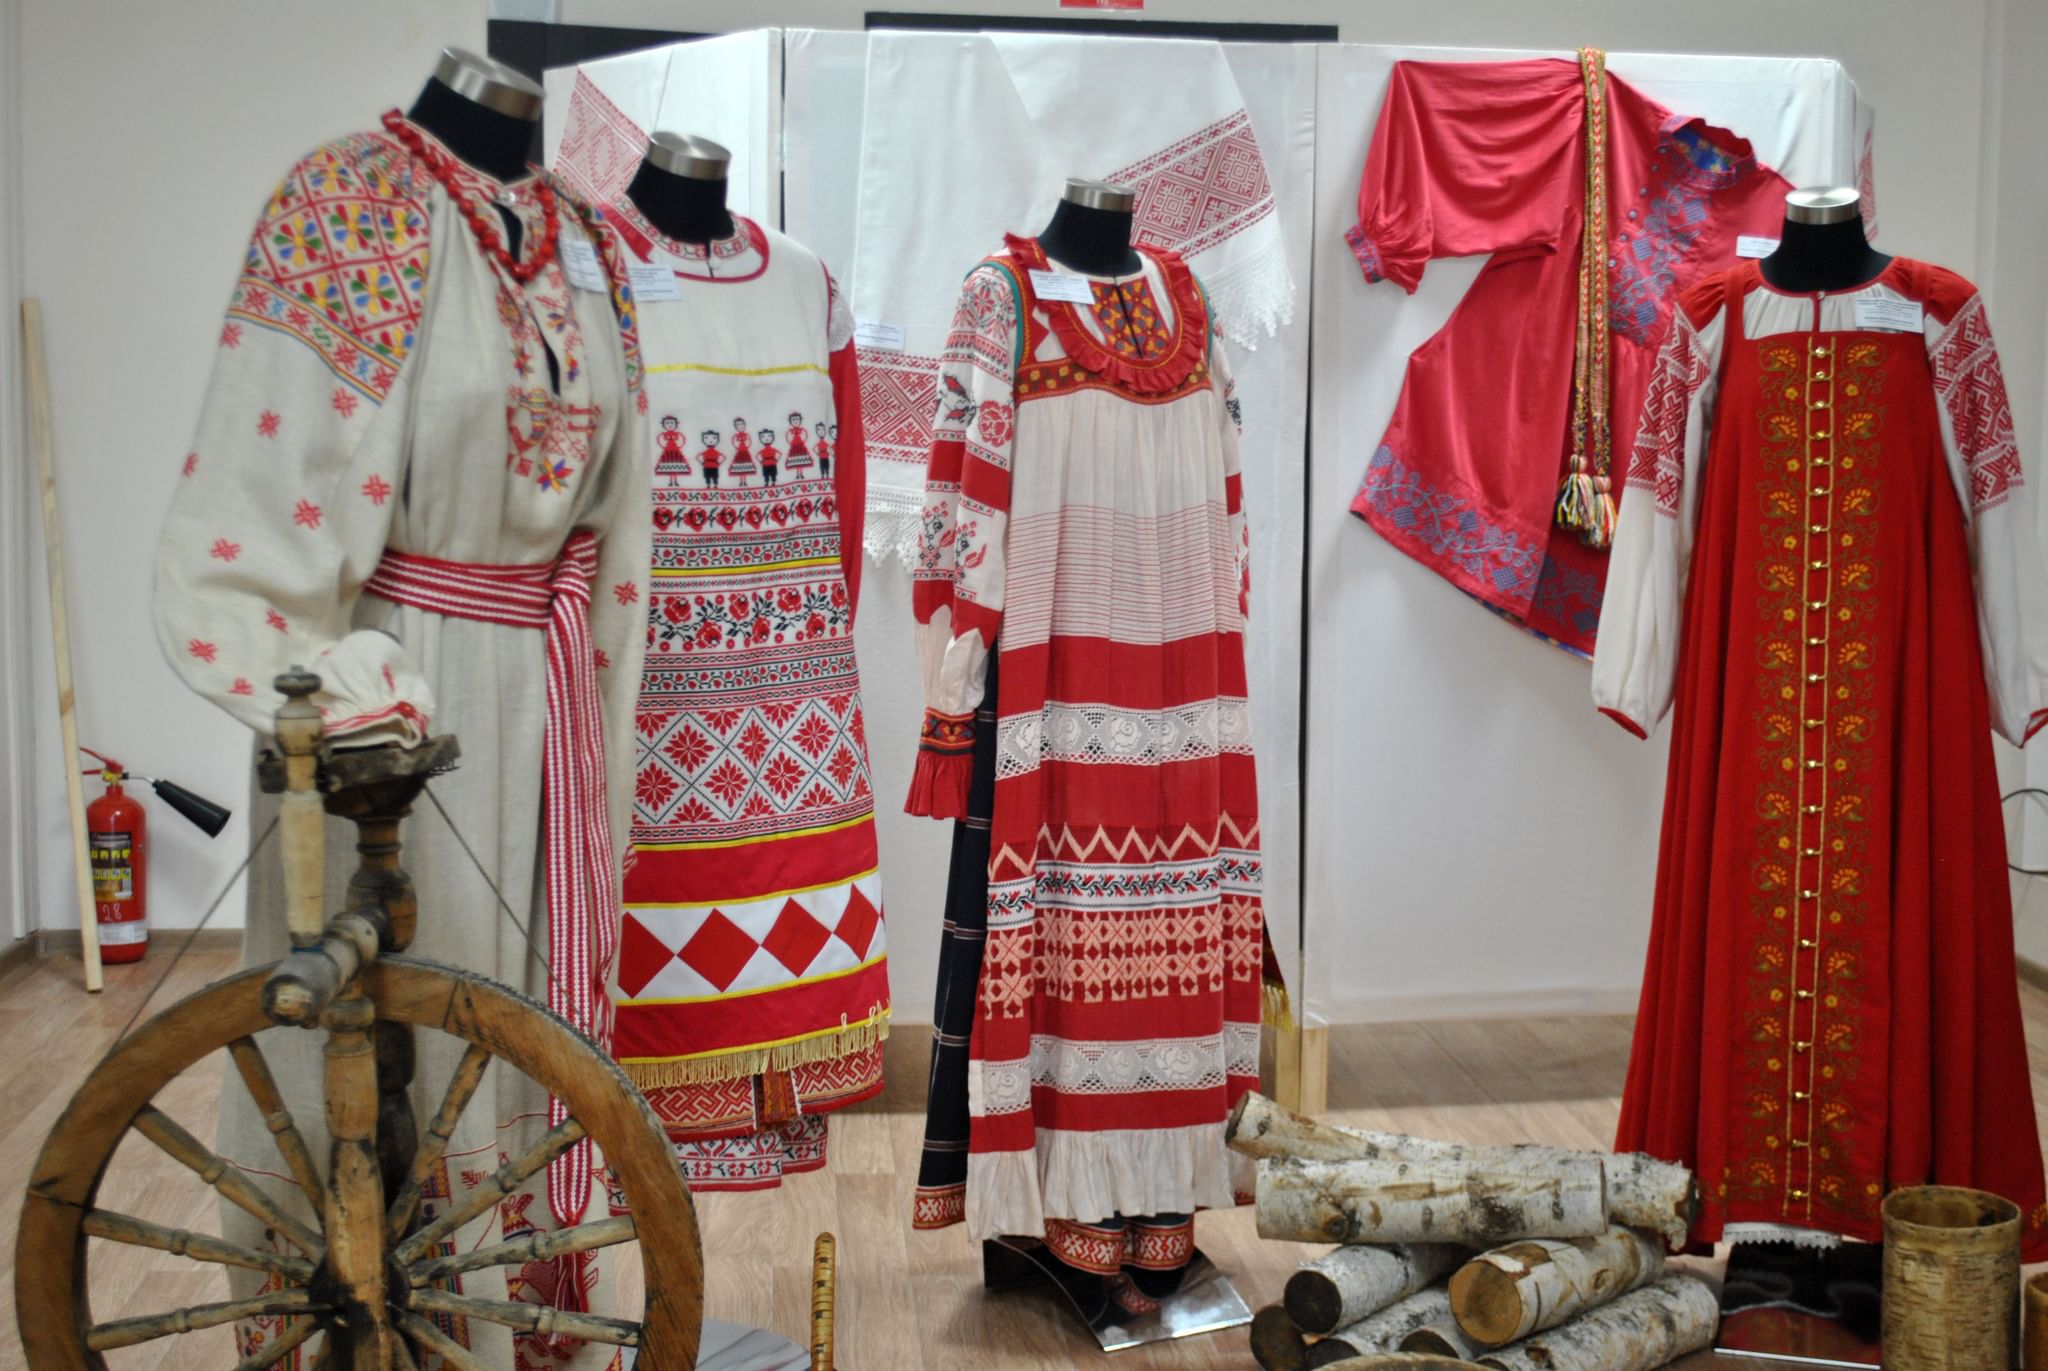 Национальный костюм сибири